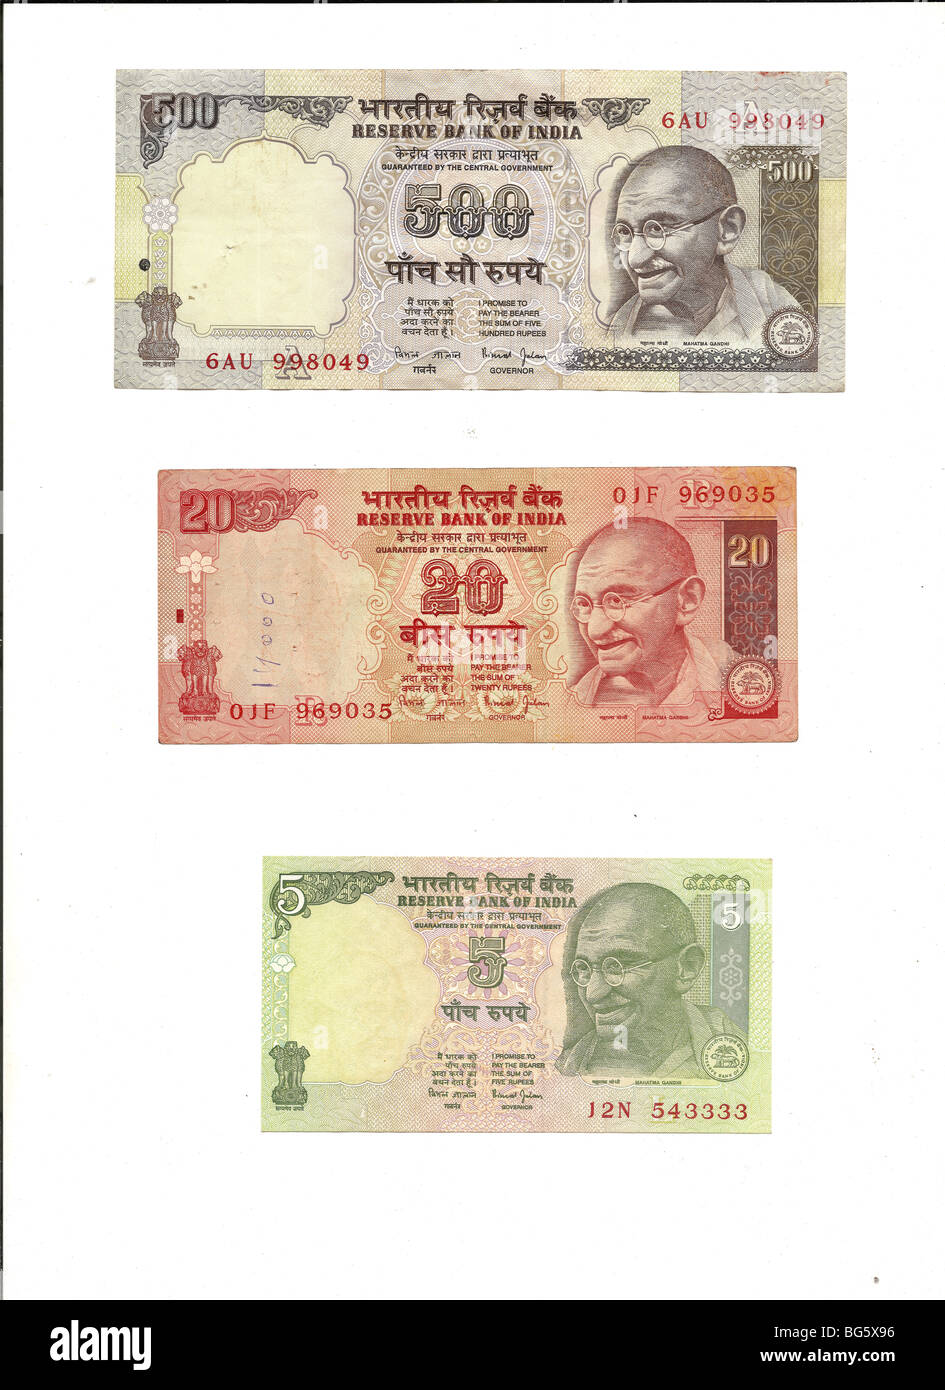 Valuta Internazionale - Indiano 500 rupee nota con ritratto di Gandhi Foto Stock